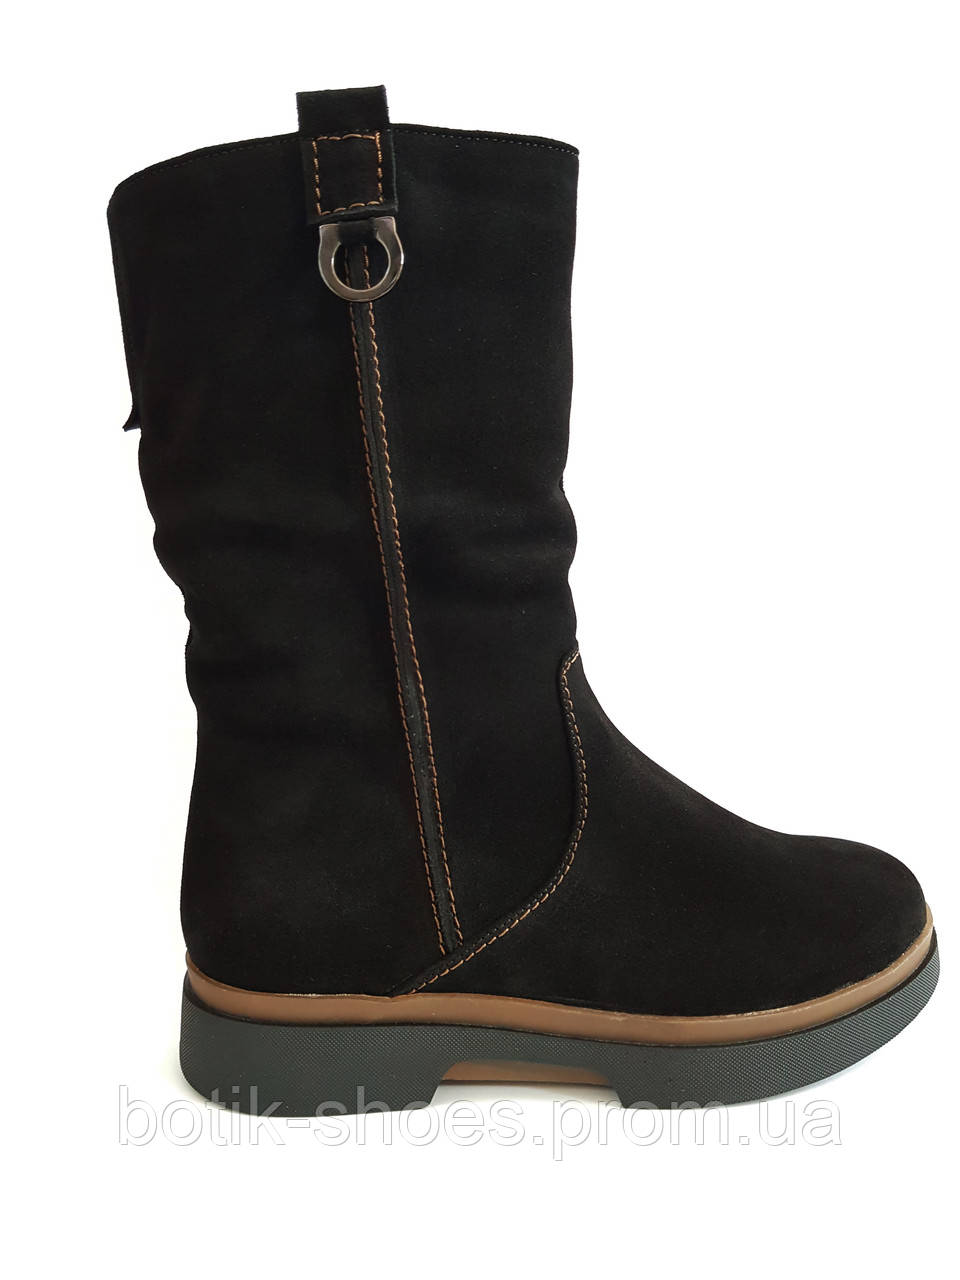 Зимові чоботи замшеві жіночі короткі на платформі зручні повсякденні теплі чорні 40 розмір Romax 595-4 2021/2022